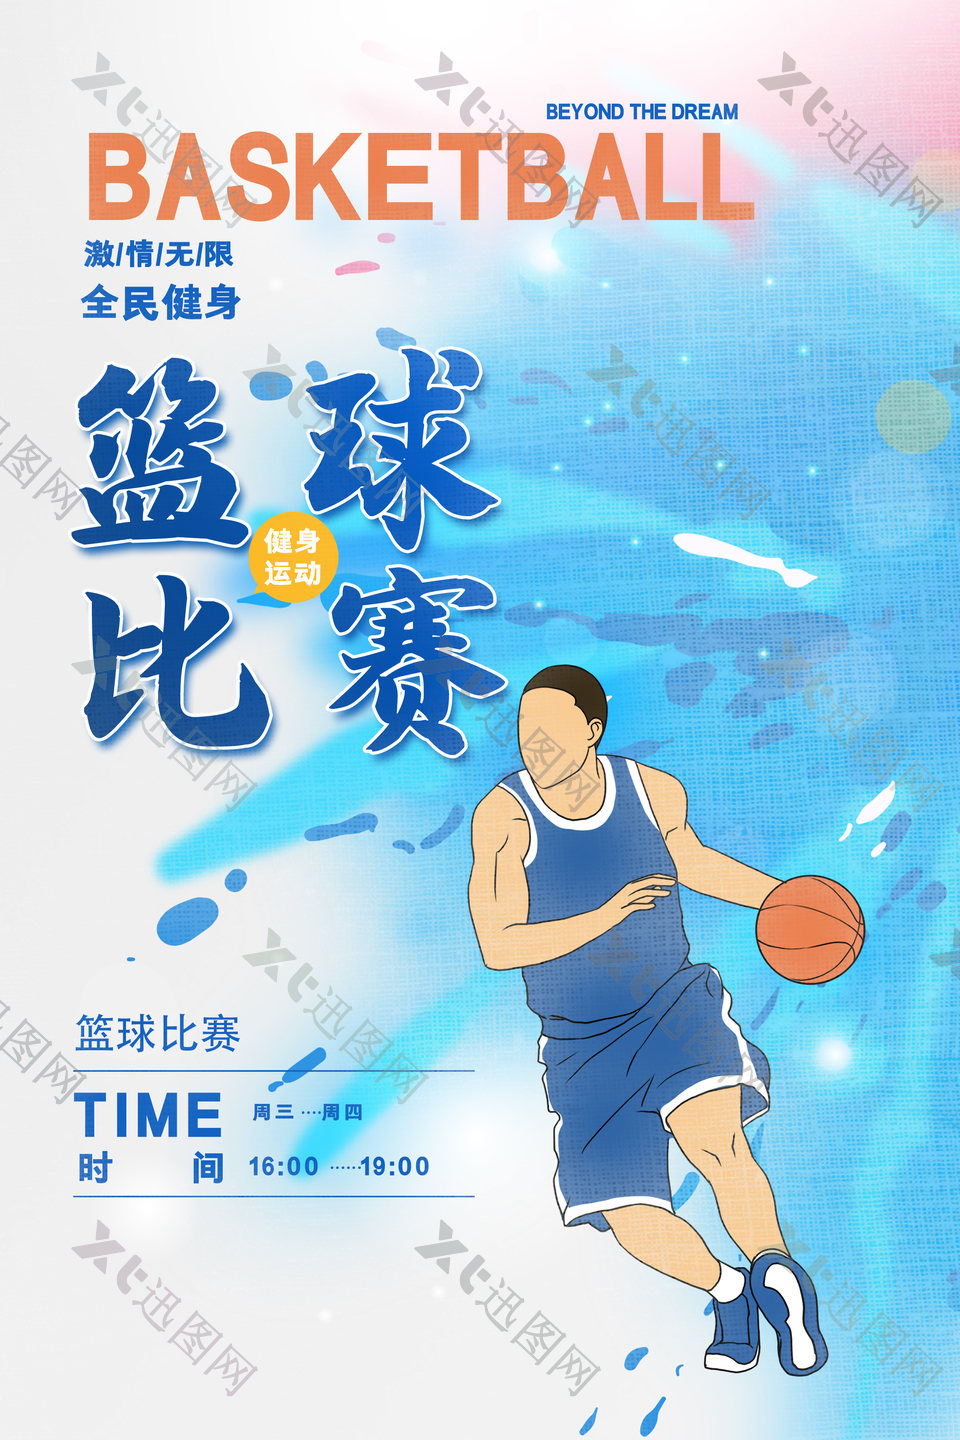 全民健身创意篮球比赛海报素材